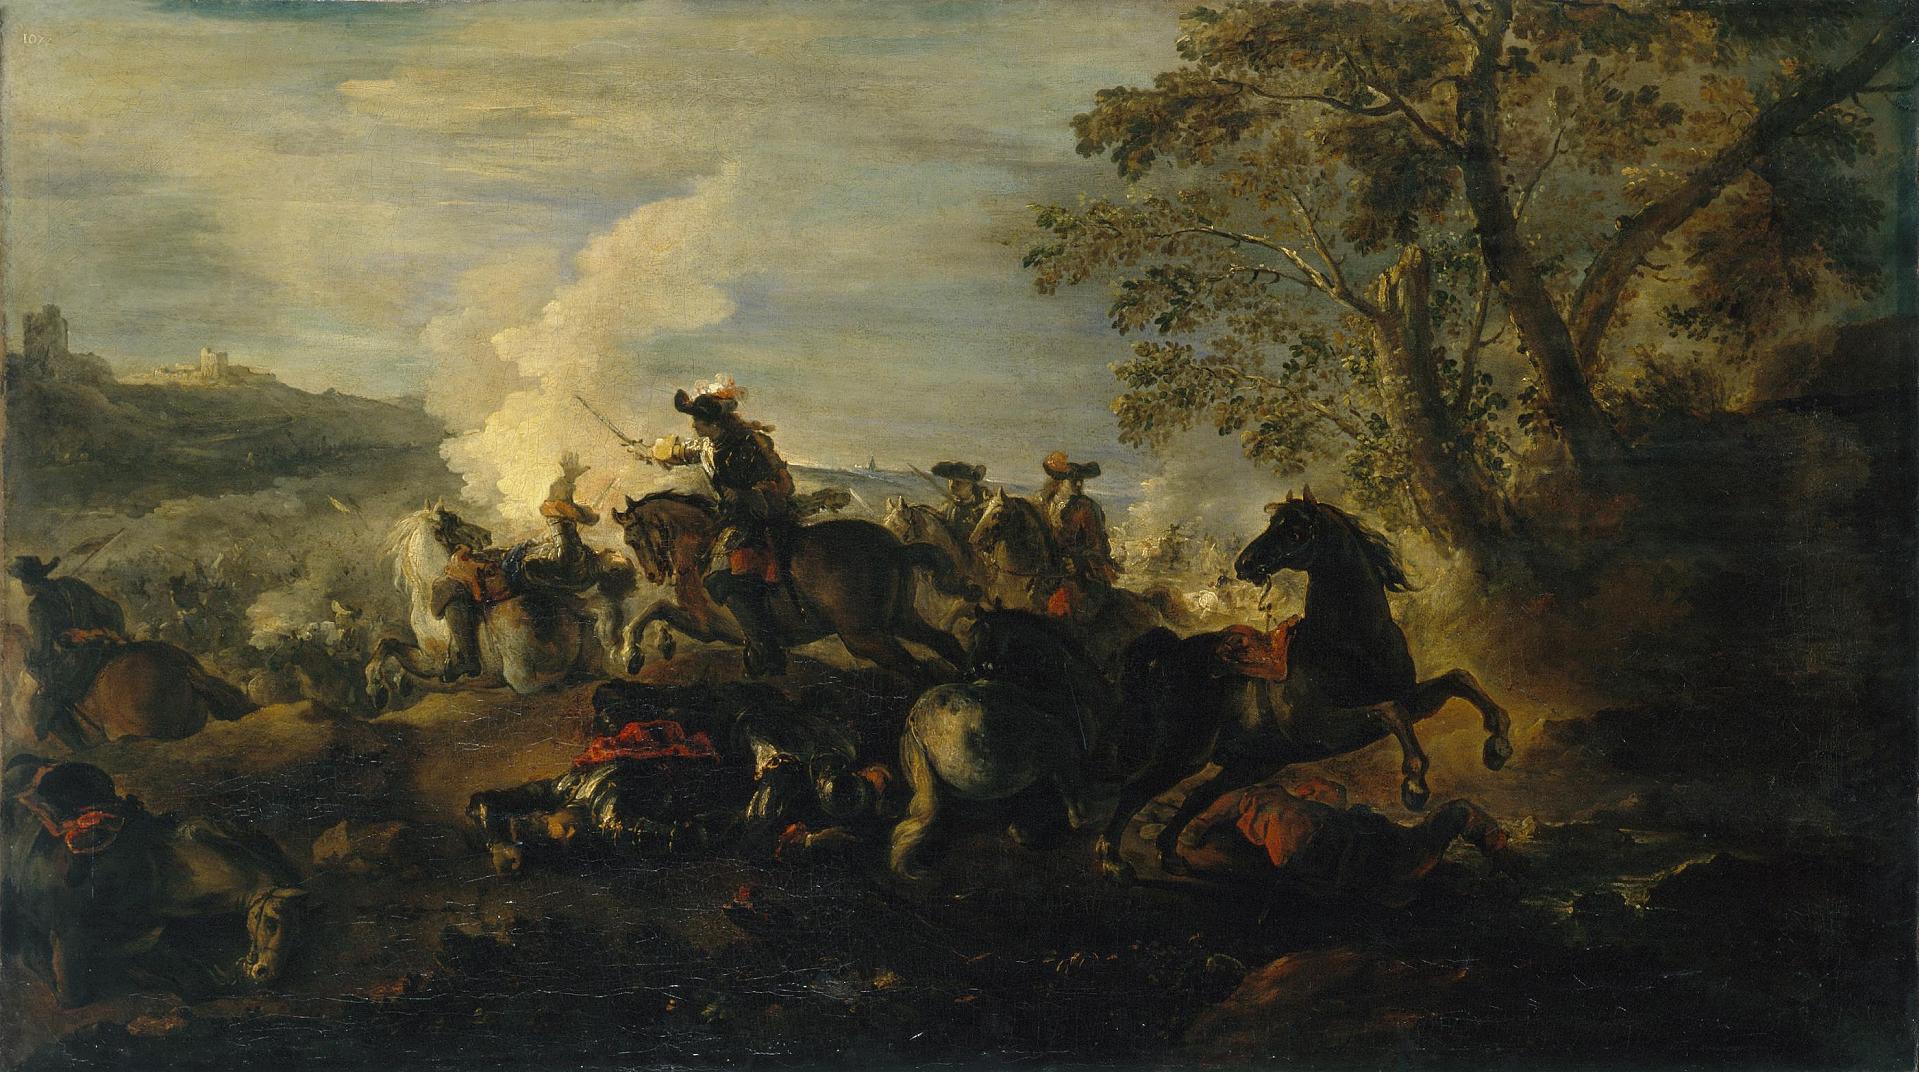 Жозеф Парросель. "Сражение". 1684-1694. Эрмитаж, Санкт-Петербург.